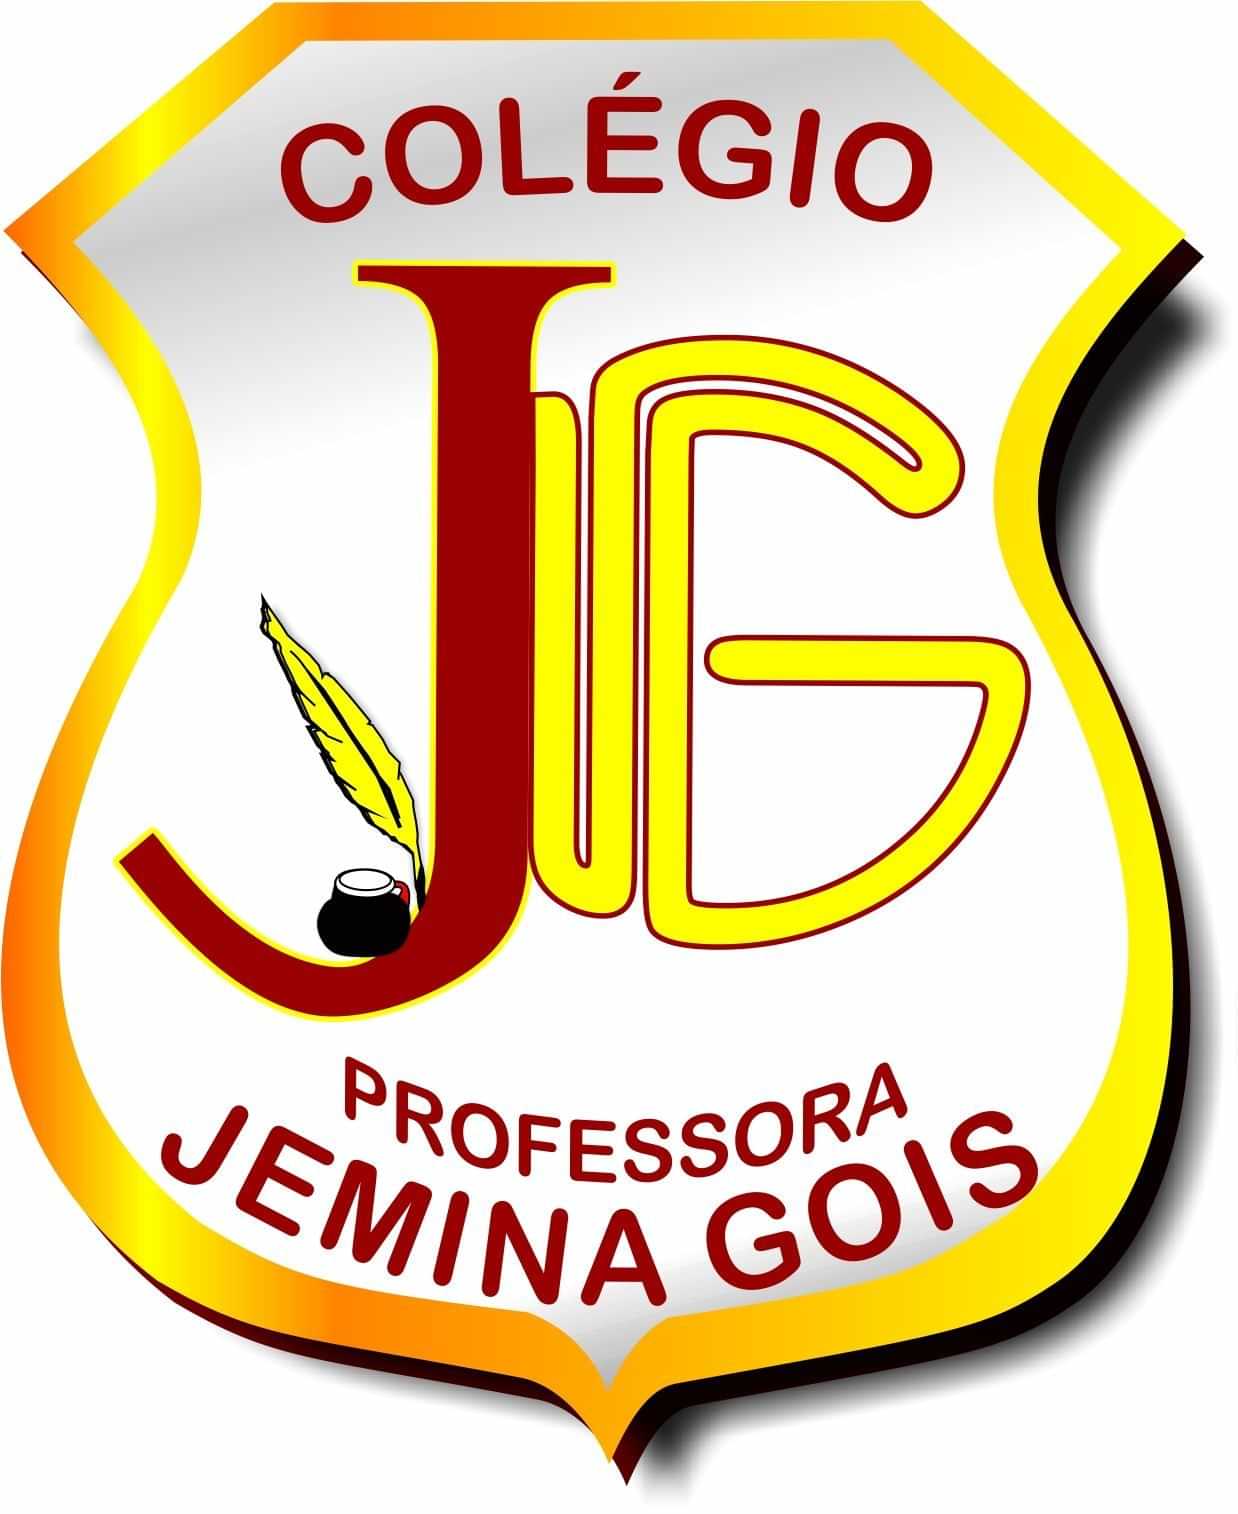  Colégio Professora Jemina Gois 